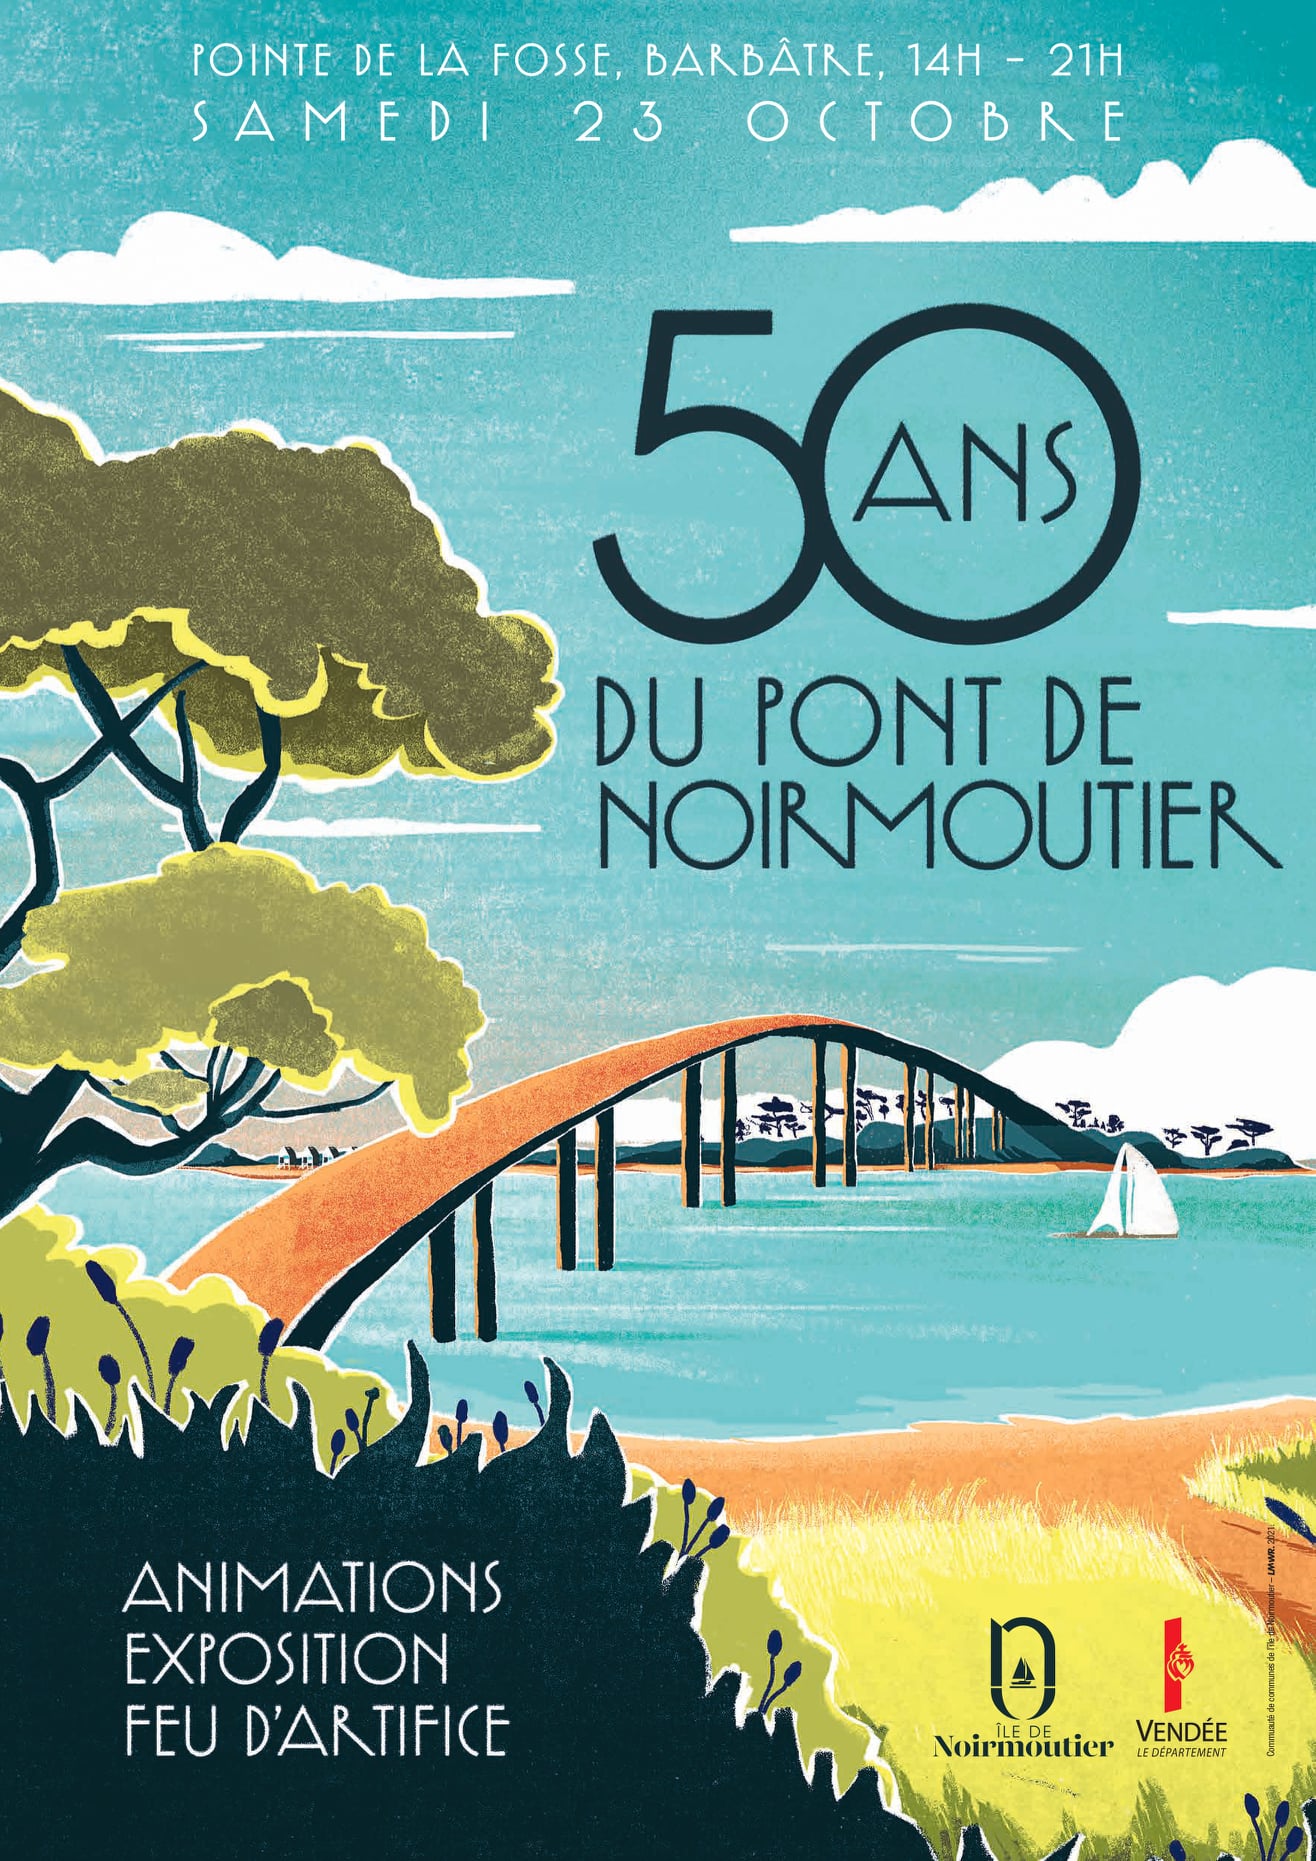 Le pont de Noirmoutier fête ses 50 ans